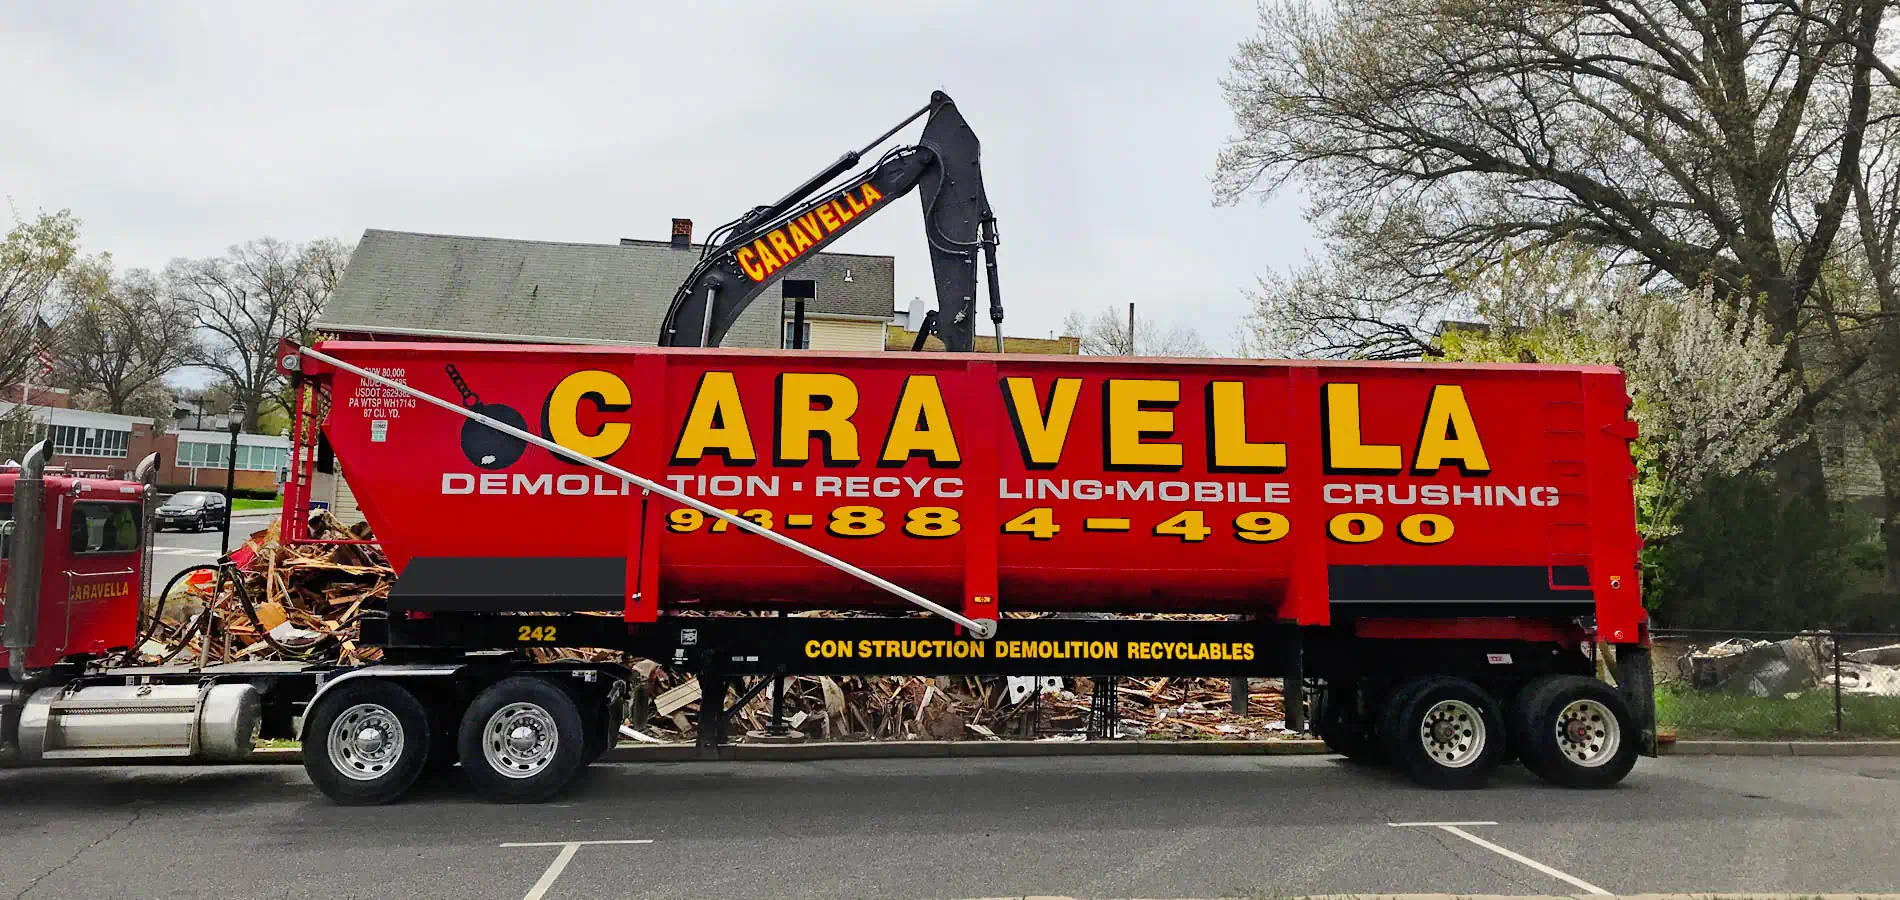 Demolition Services in Essex County, NJ | Caravella Demolition